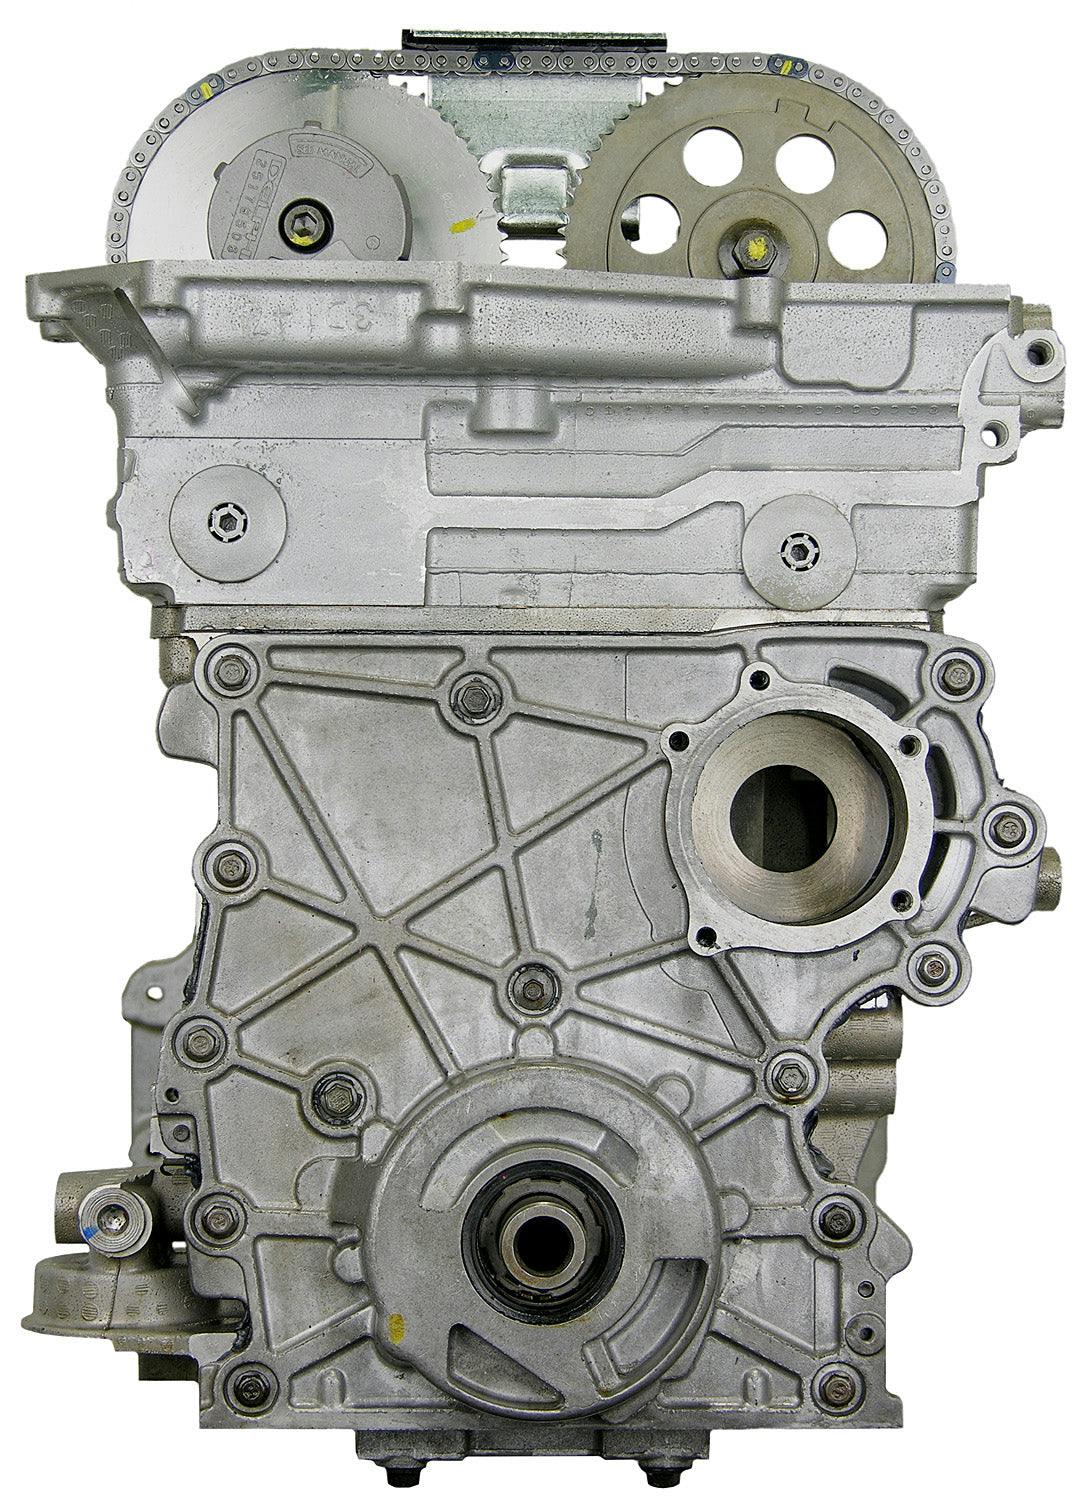 4.2L Inline-6 Engine for 2002-2004 Buick Rainier/Chevrolet Trailblazer, Trailblazer EXT/GMC Envoy, Envoy XL, Envoy XUV/Isuzu Ascender/Oldsmobile Bravada